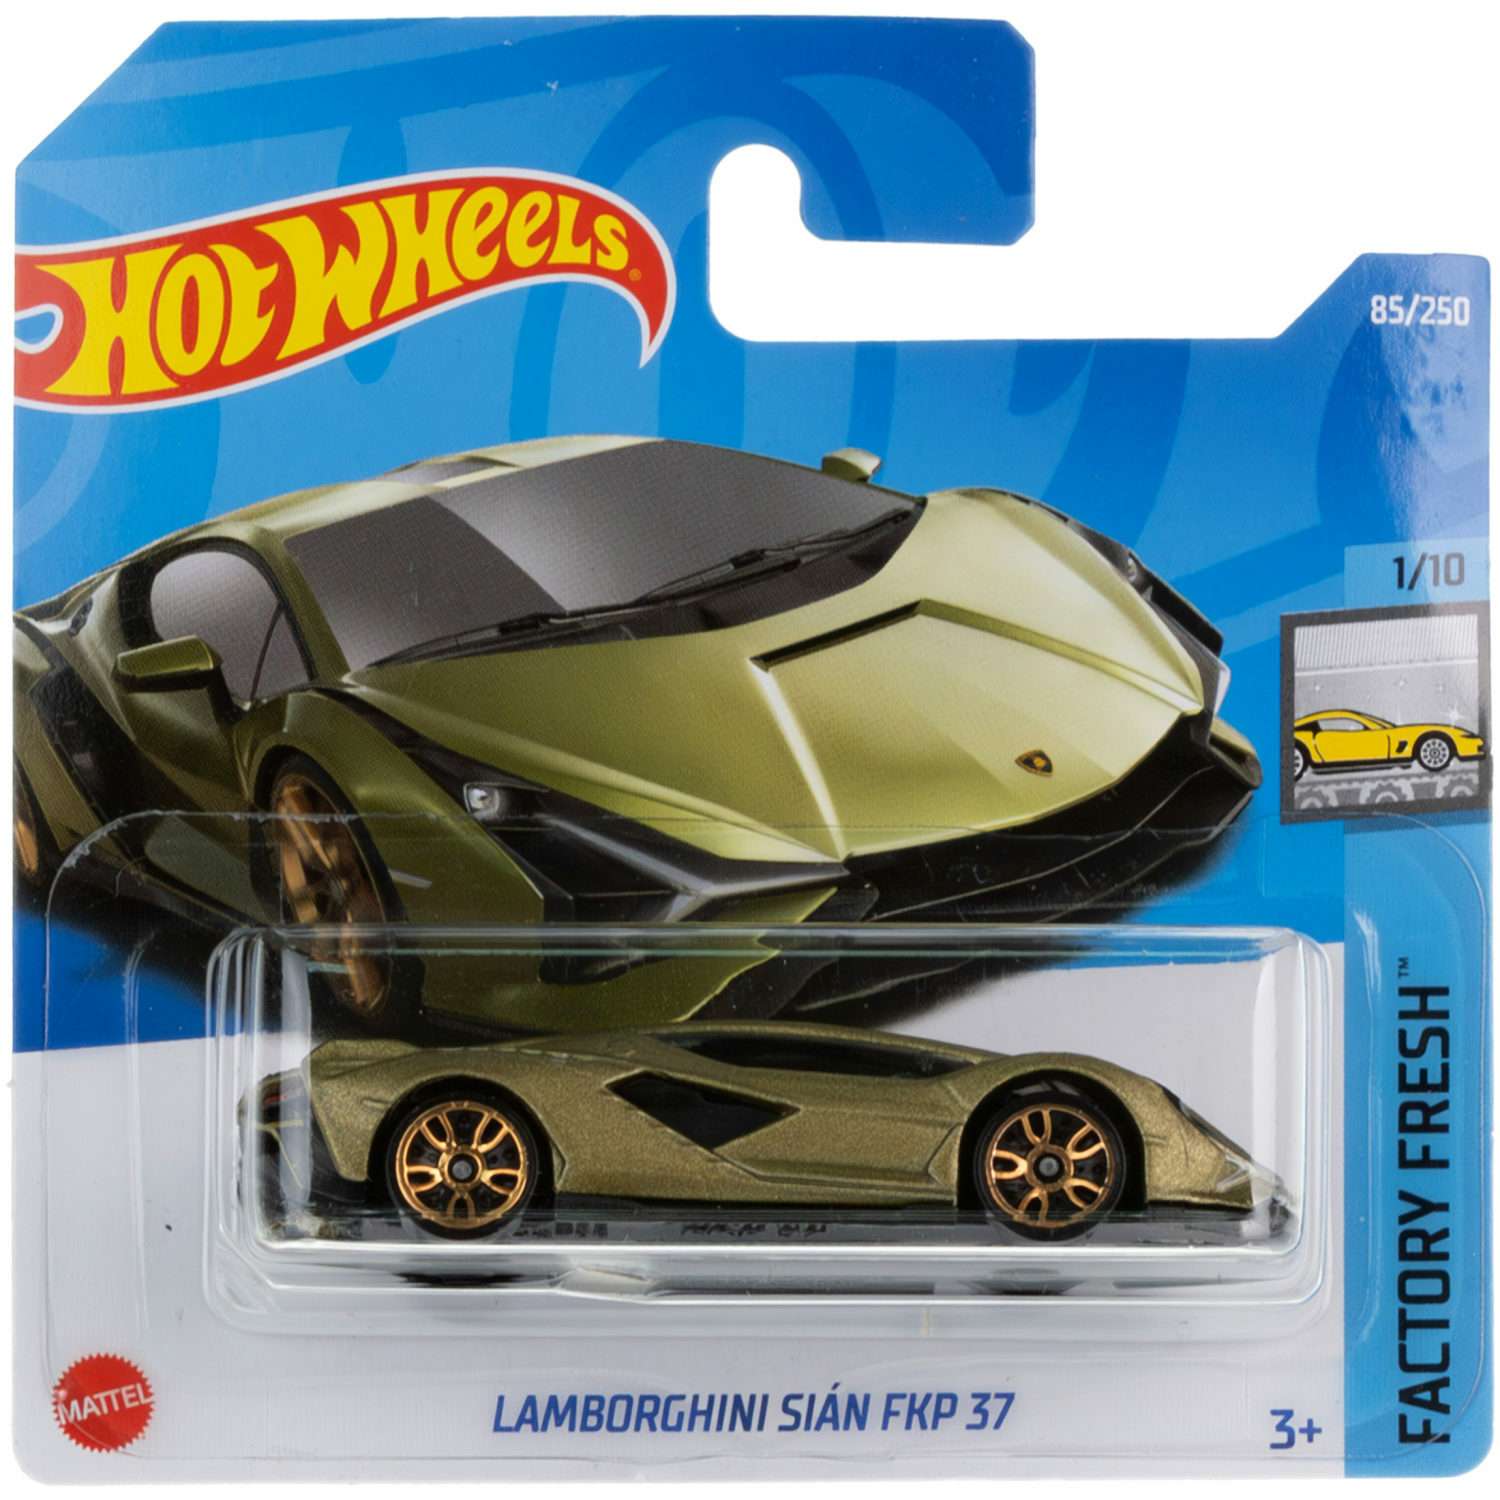 Коллекционная машинка Hot Wheels Lamborghini sian fkp 37 5785-146 - фото 6